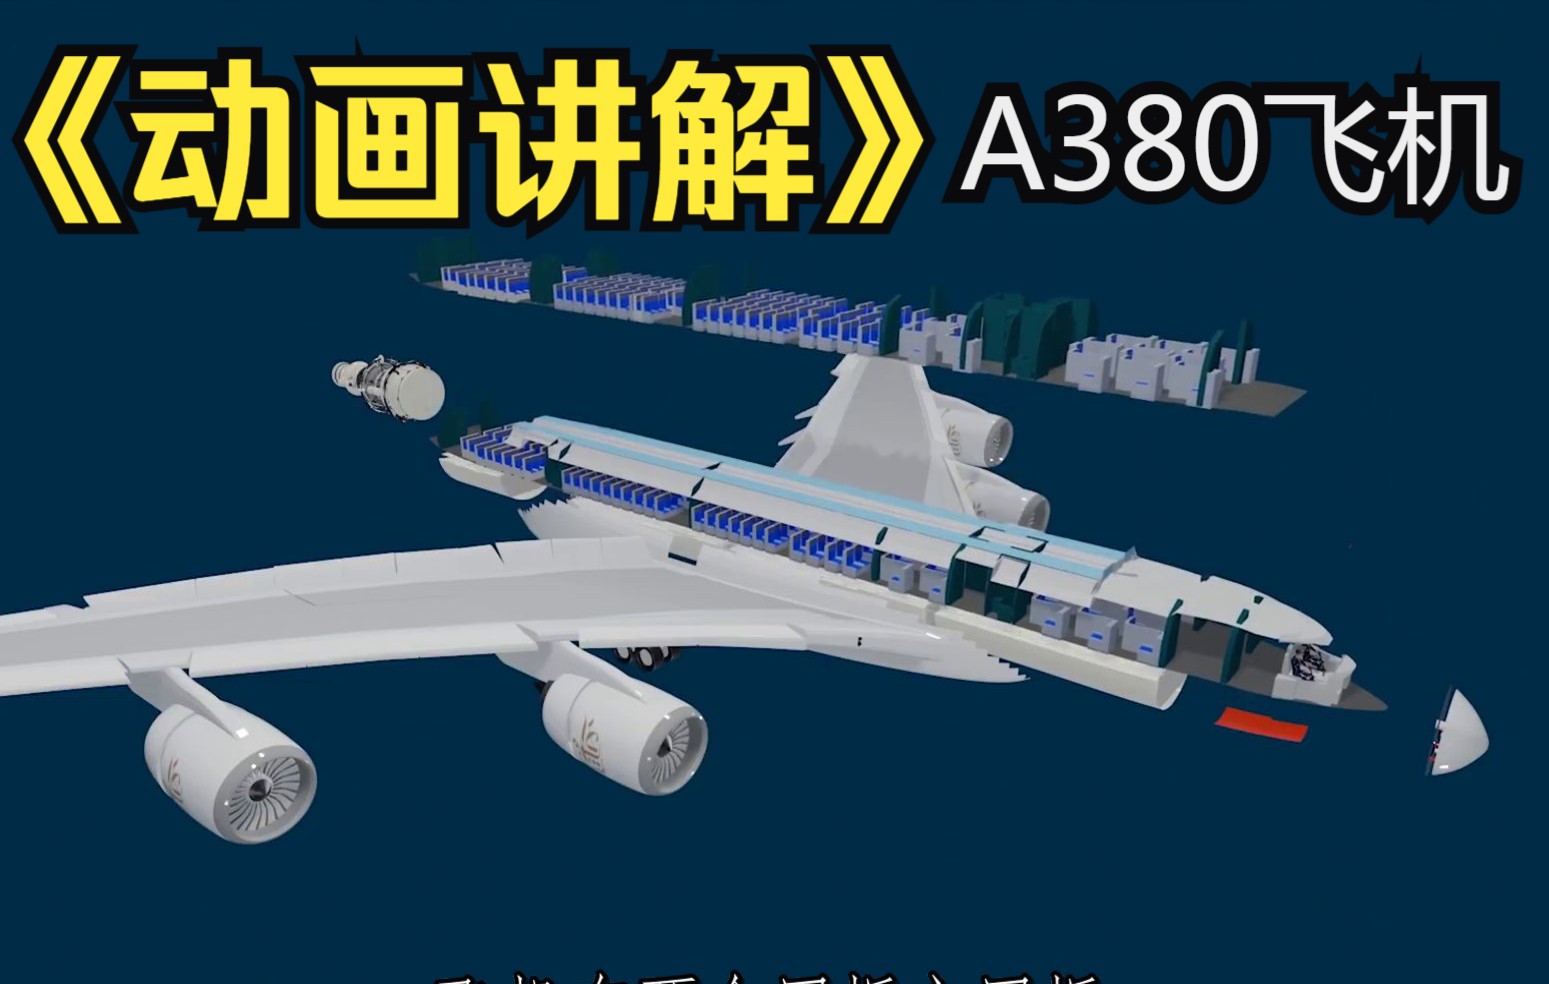 公务舱_B777-300ER体验_南航机上服务 - 中国南方航空官网